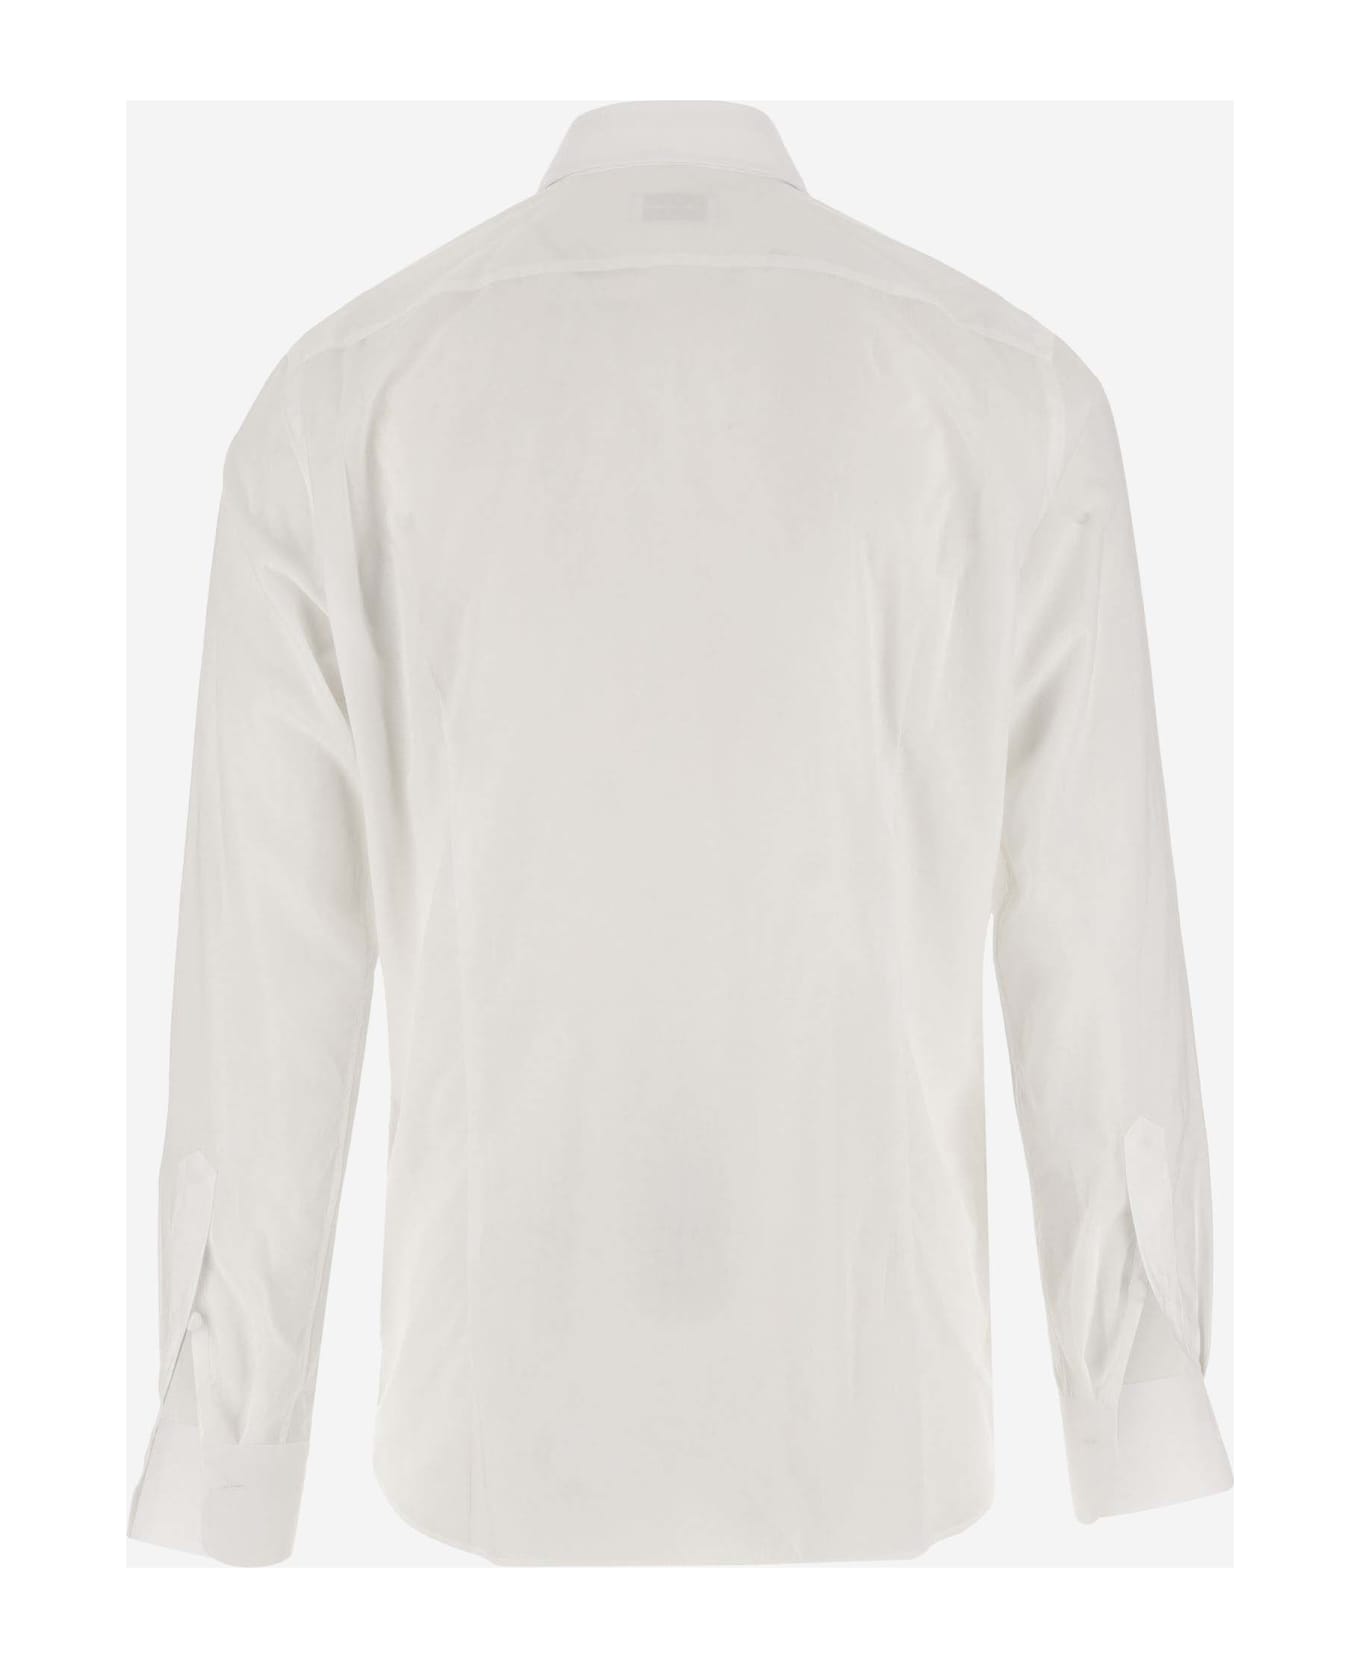 Tagliatore Cotton Poplin Shirt With Ruffles - MULTICOLOR